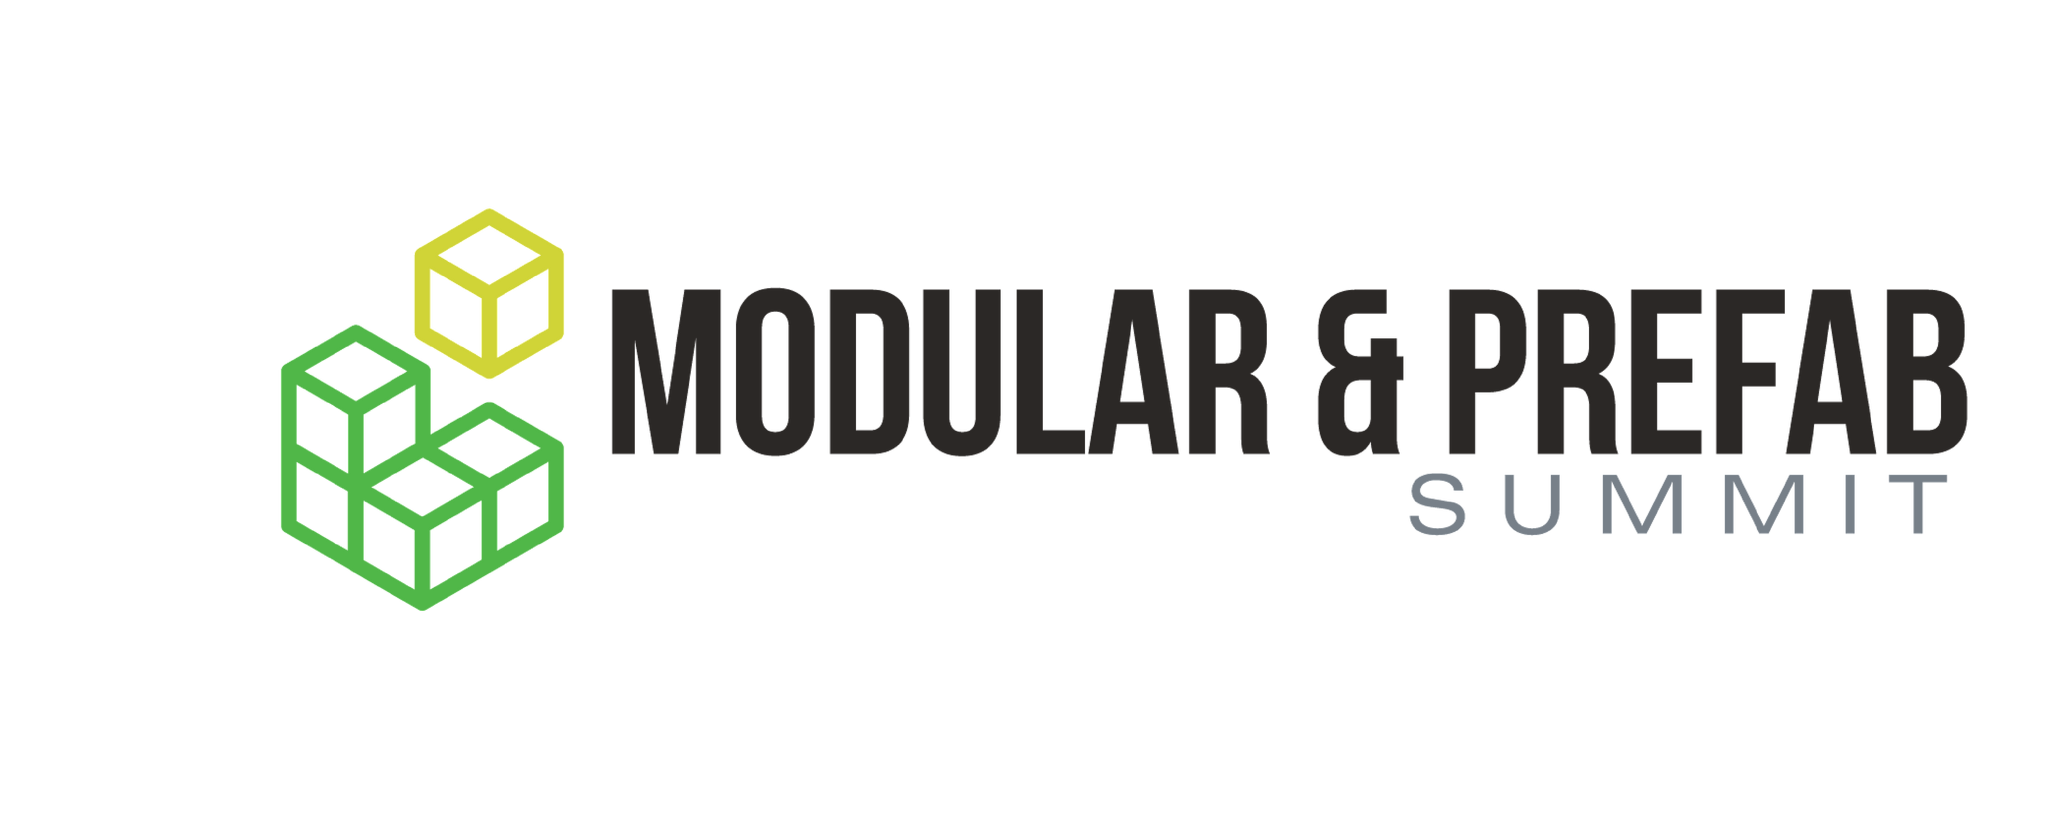 Sydney Build Modular Prefab Summit